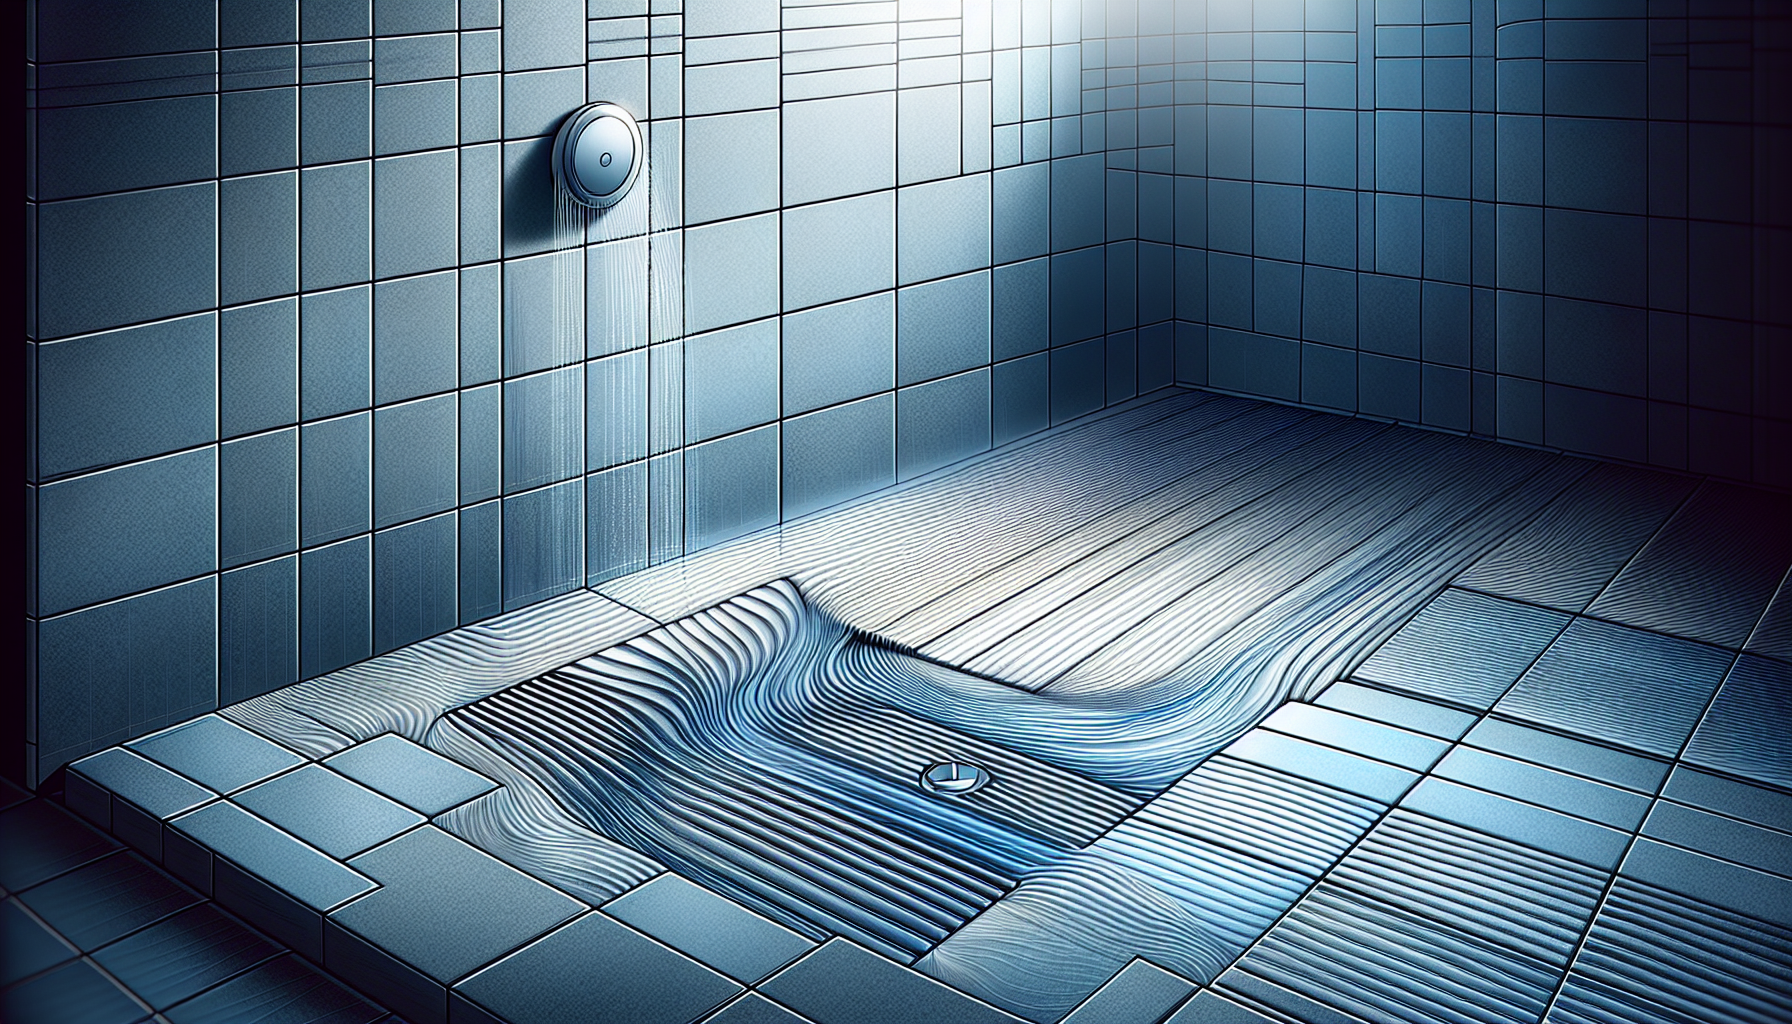 Duschablauf und Fliesenverlegung. Illustration eines korrekten Gefälles und fachgerechten Verlegung von Fliesen in der Dusche.